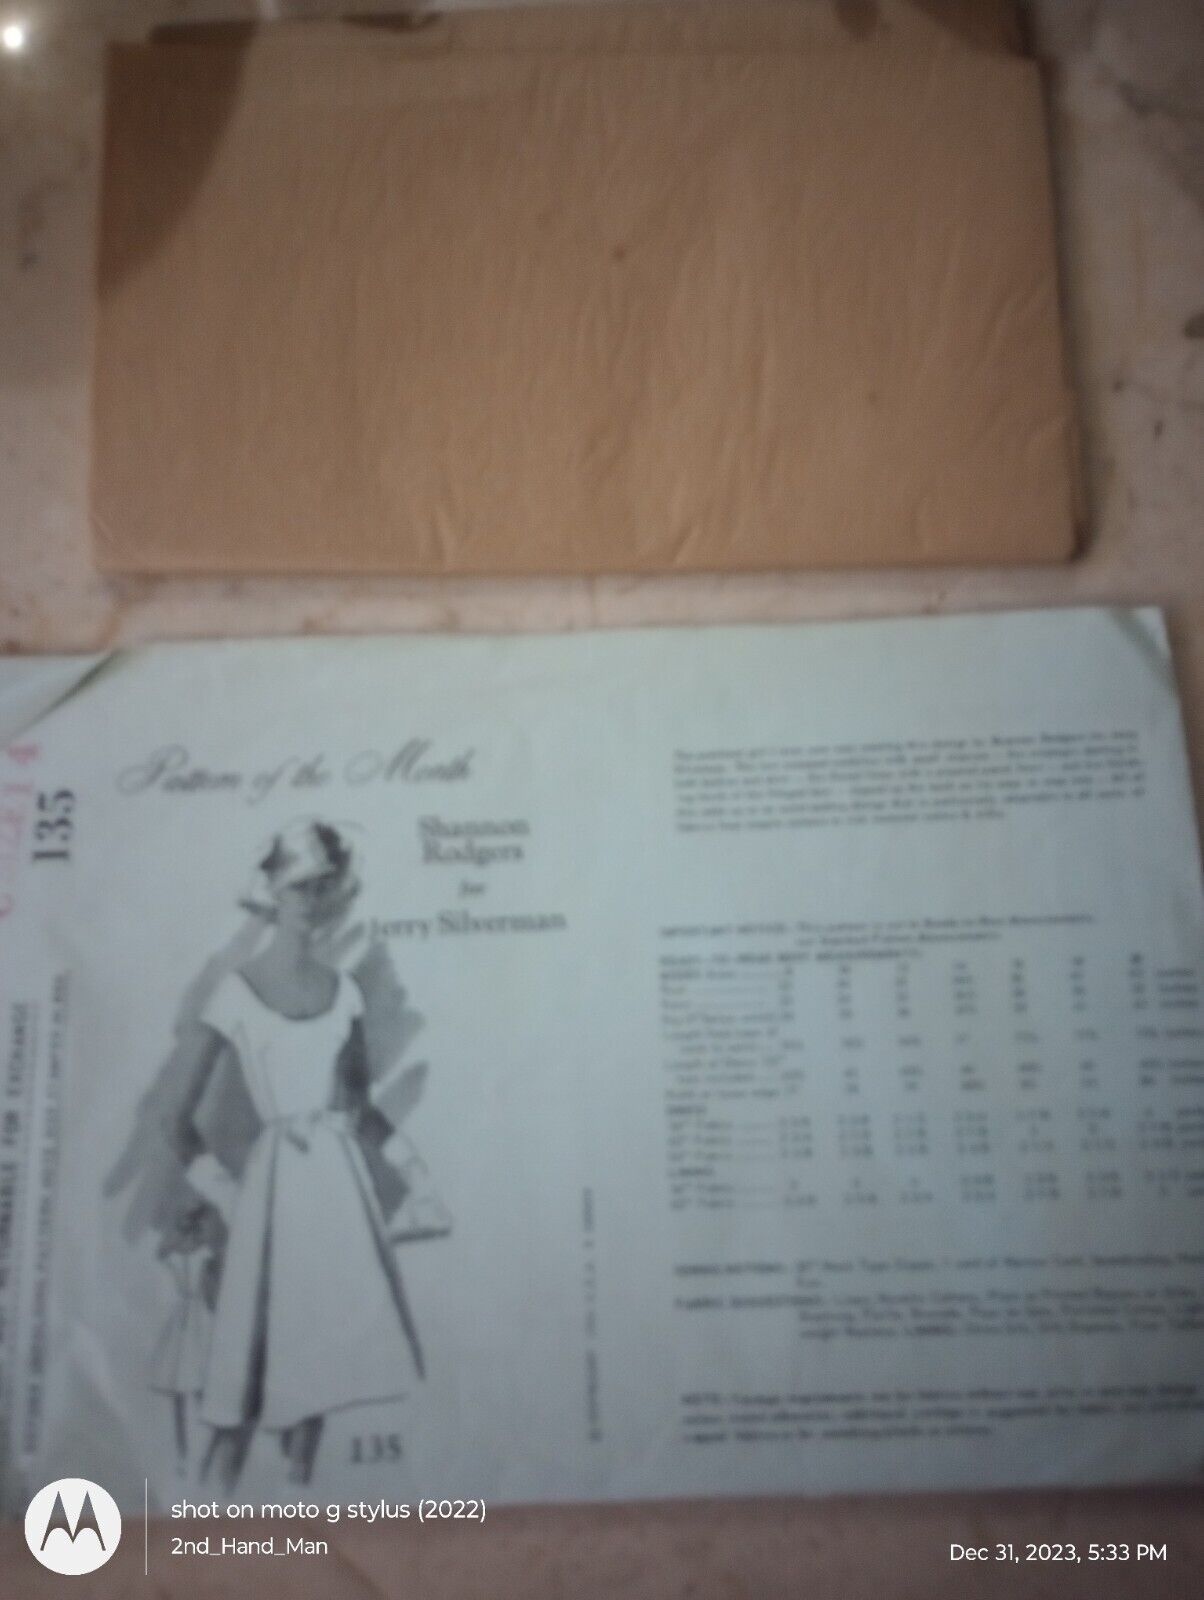 1964 SPADEA SHANNON RODGERS JERRY SILVERMAN 135 SZ 14 DRESS UNCUT SEWING PATTERN